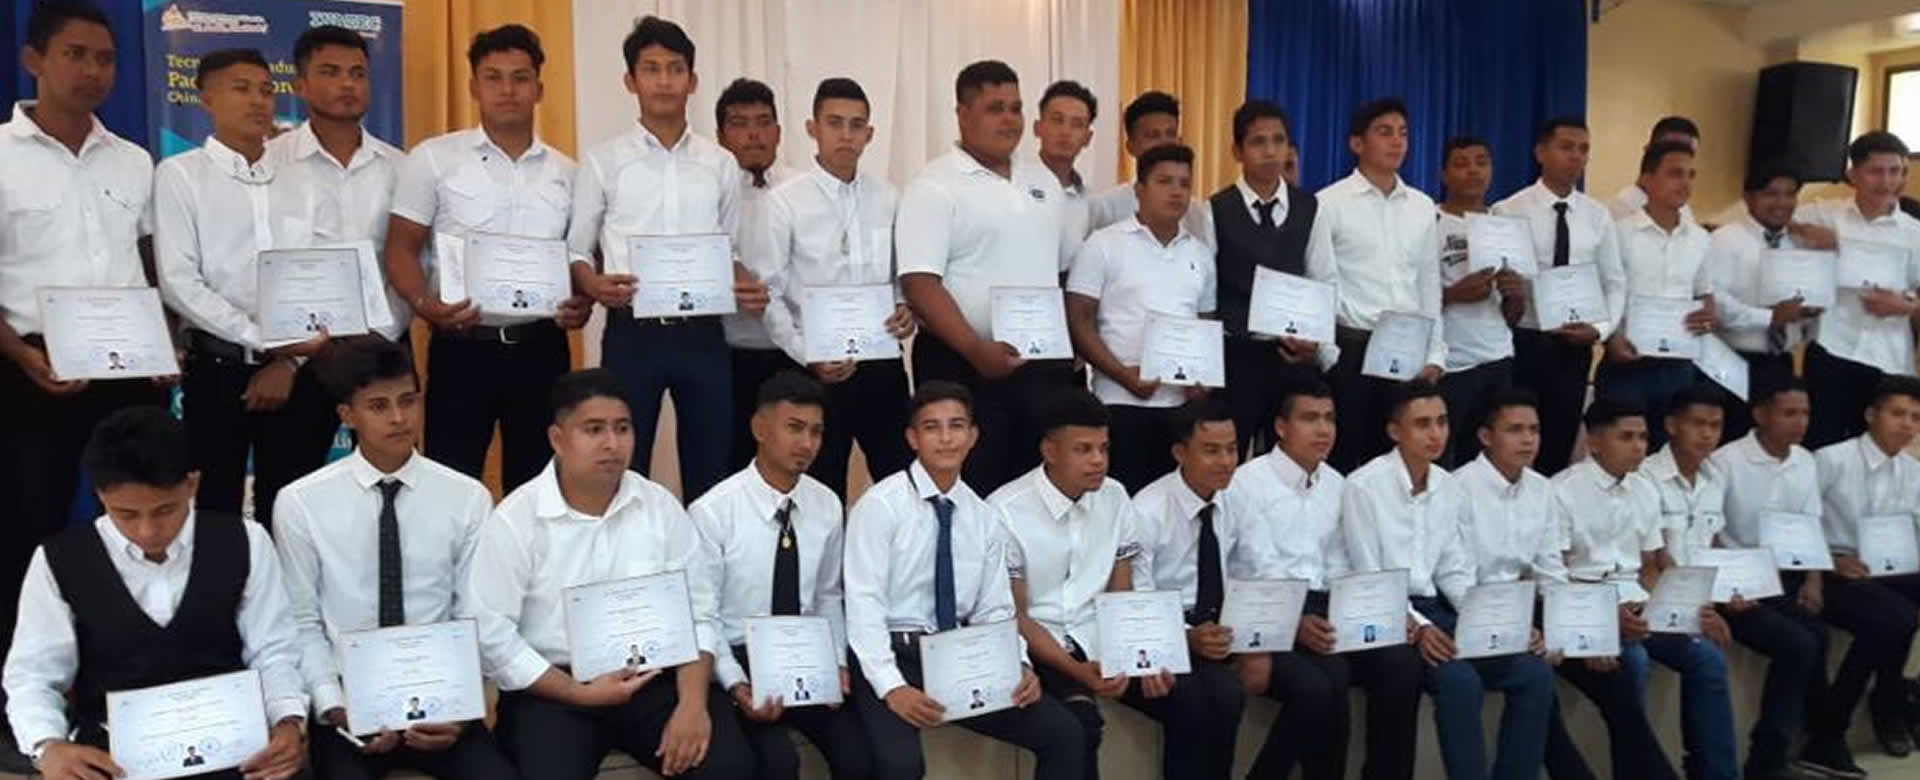 Chinandega: 84 jóvenes se gradúan de las carreras técnicas